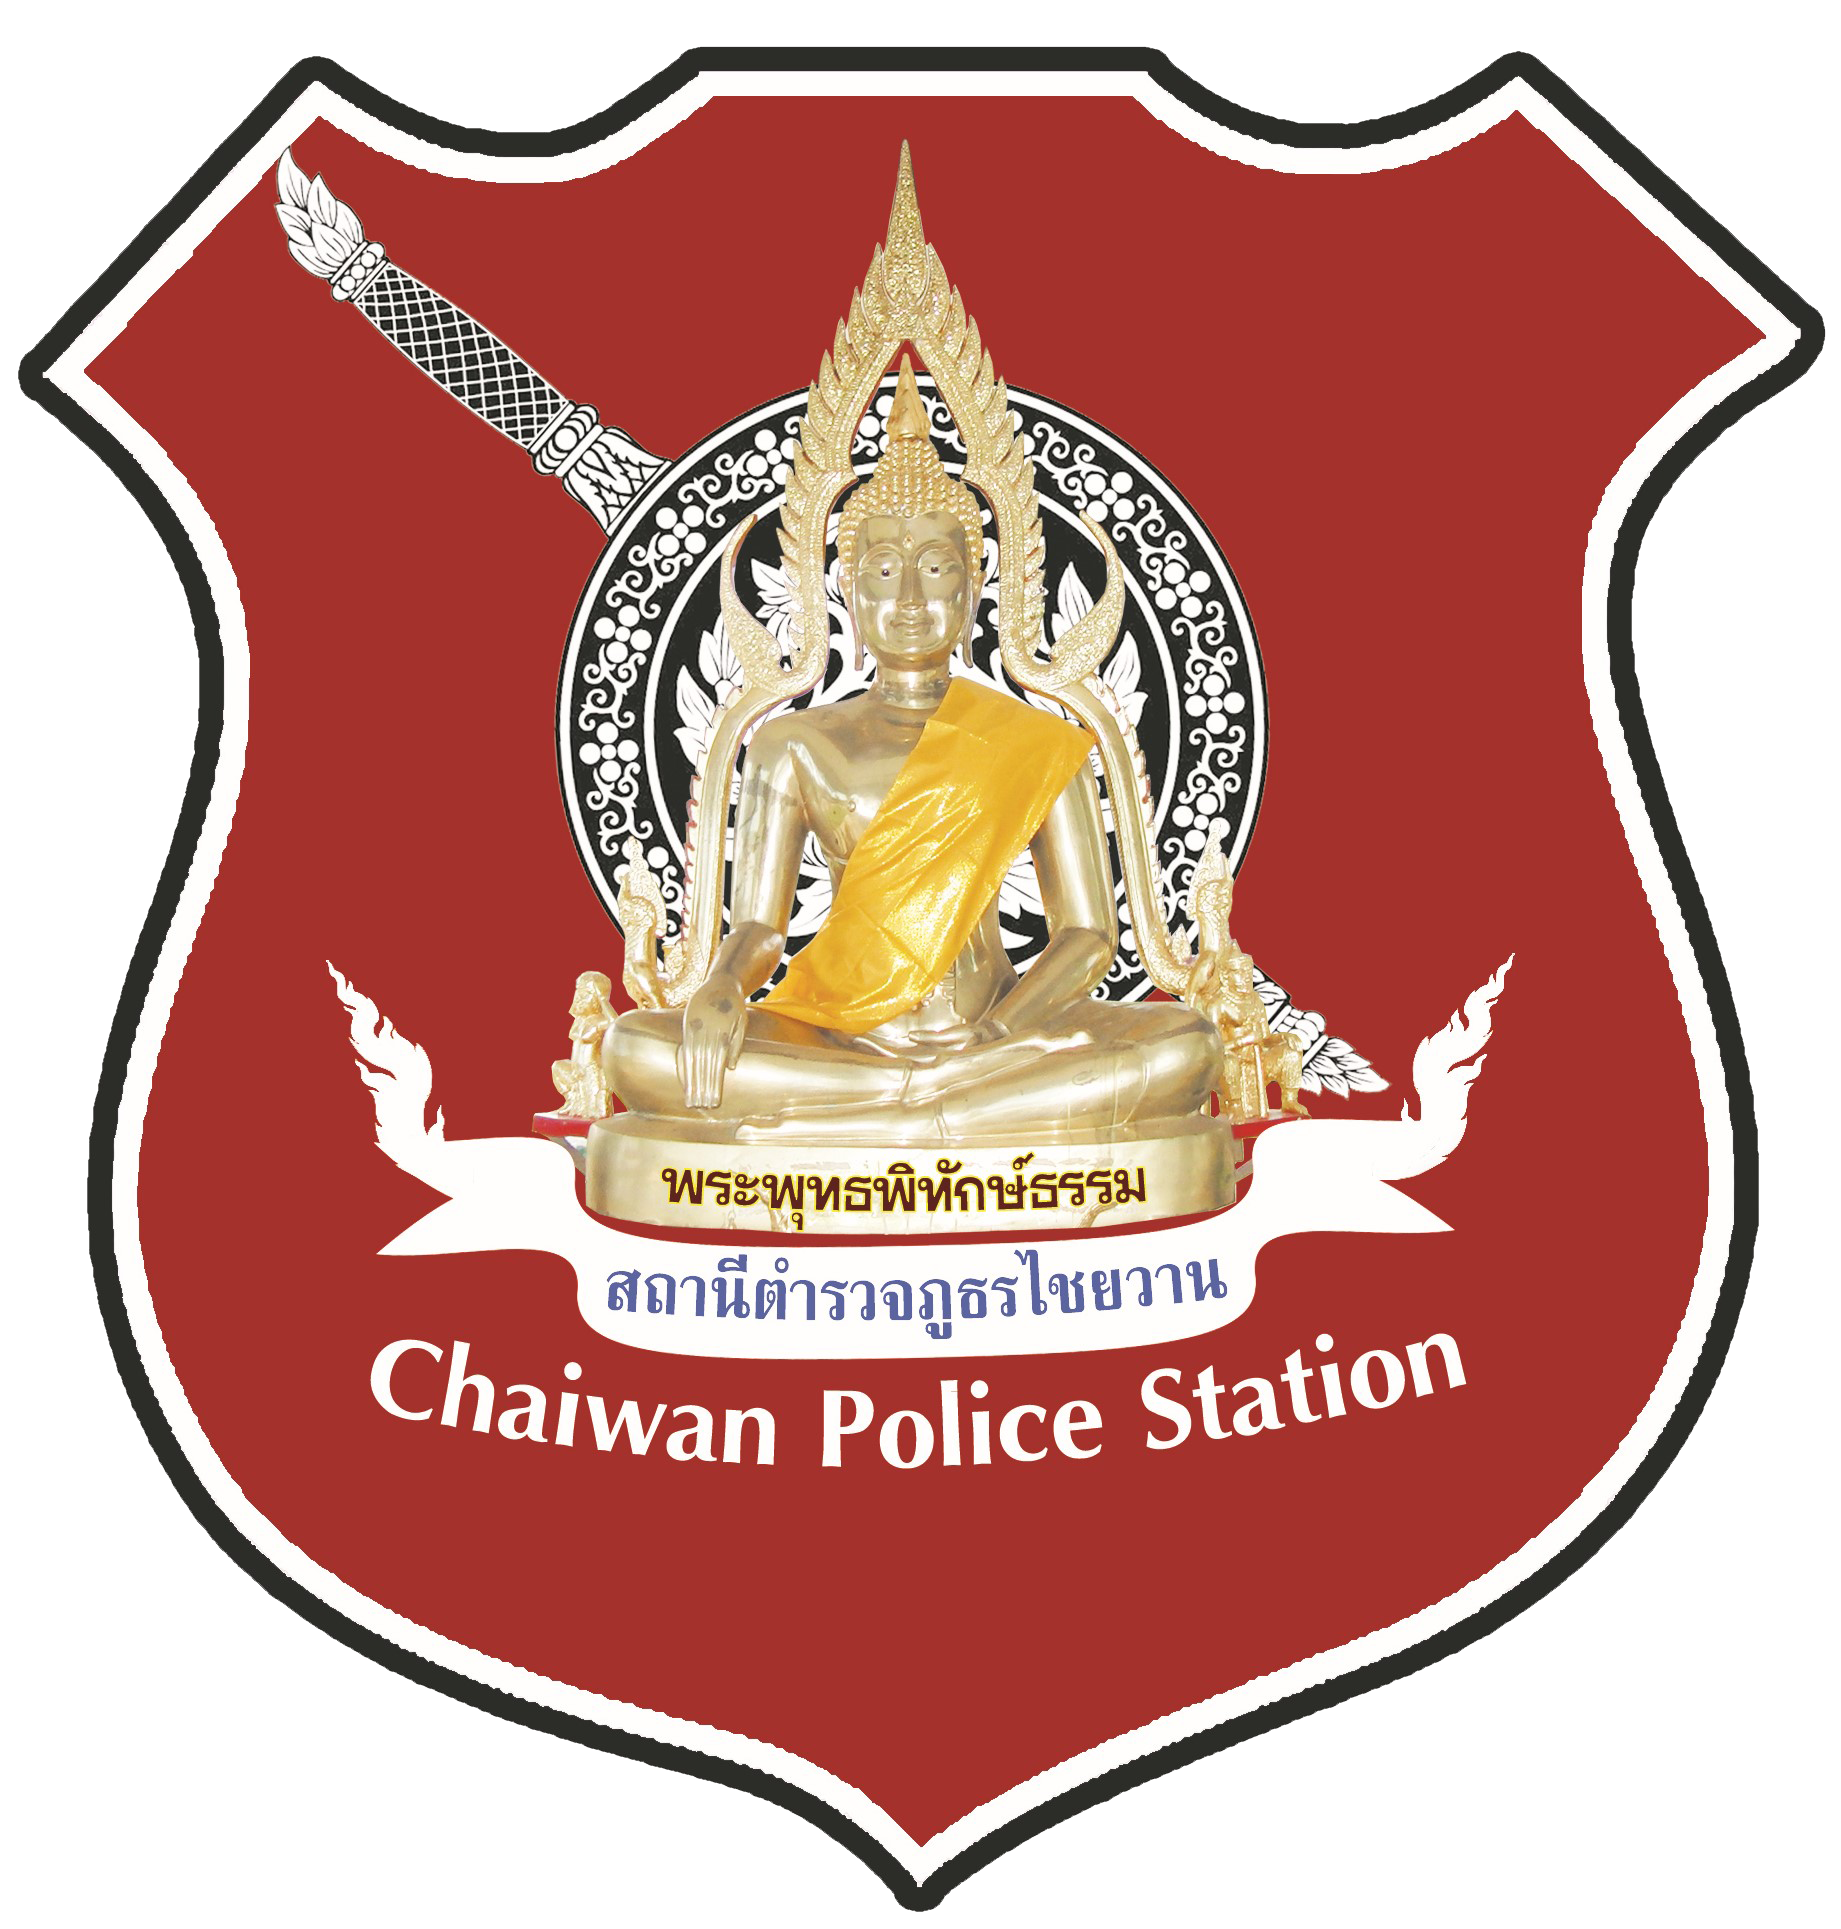 สถานีตำรวจภูธรไชยวาน logo